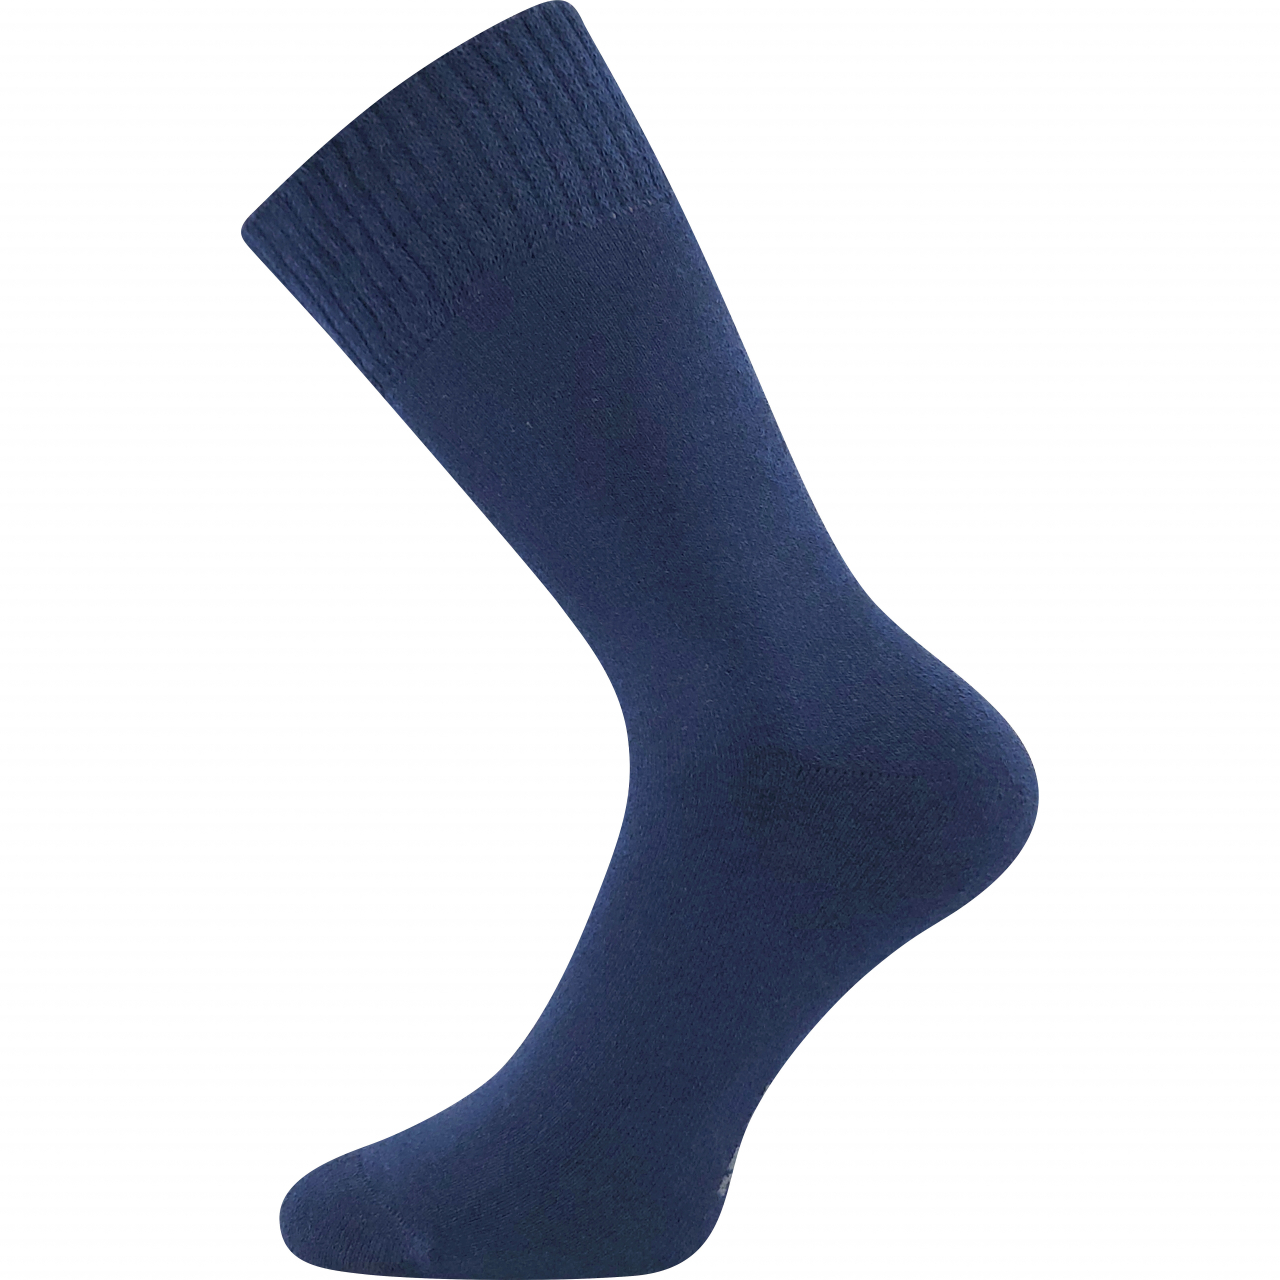 Ponožky klasické unisex Voxx Wolis - tmavě modré, 35-38